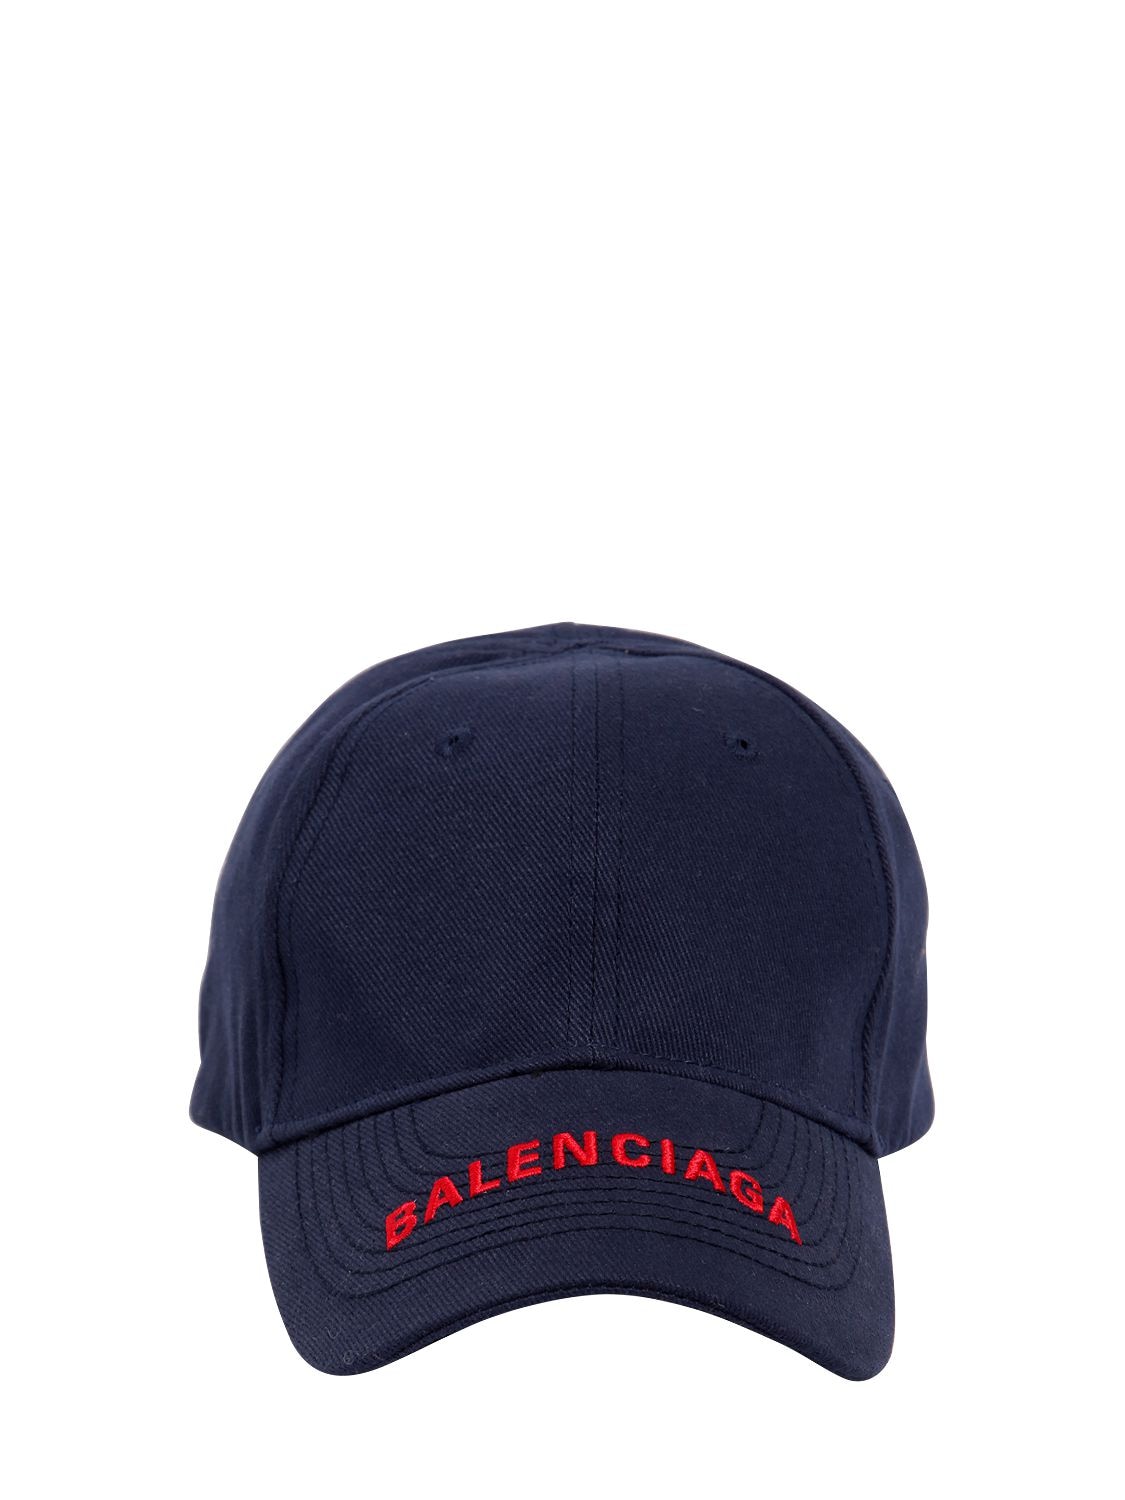 BALENCIAGA LOGO EMBROIDERED GABARDINE HAT,68IOFW032-NDEwMA2